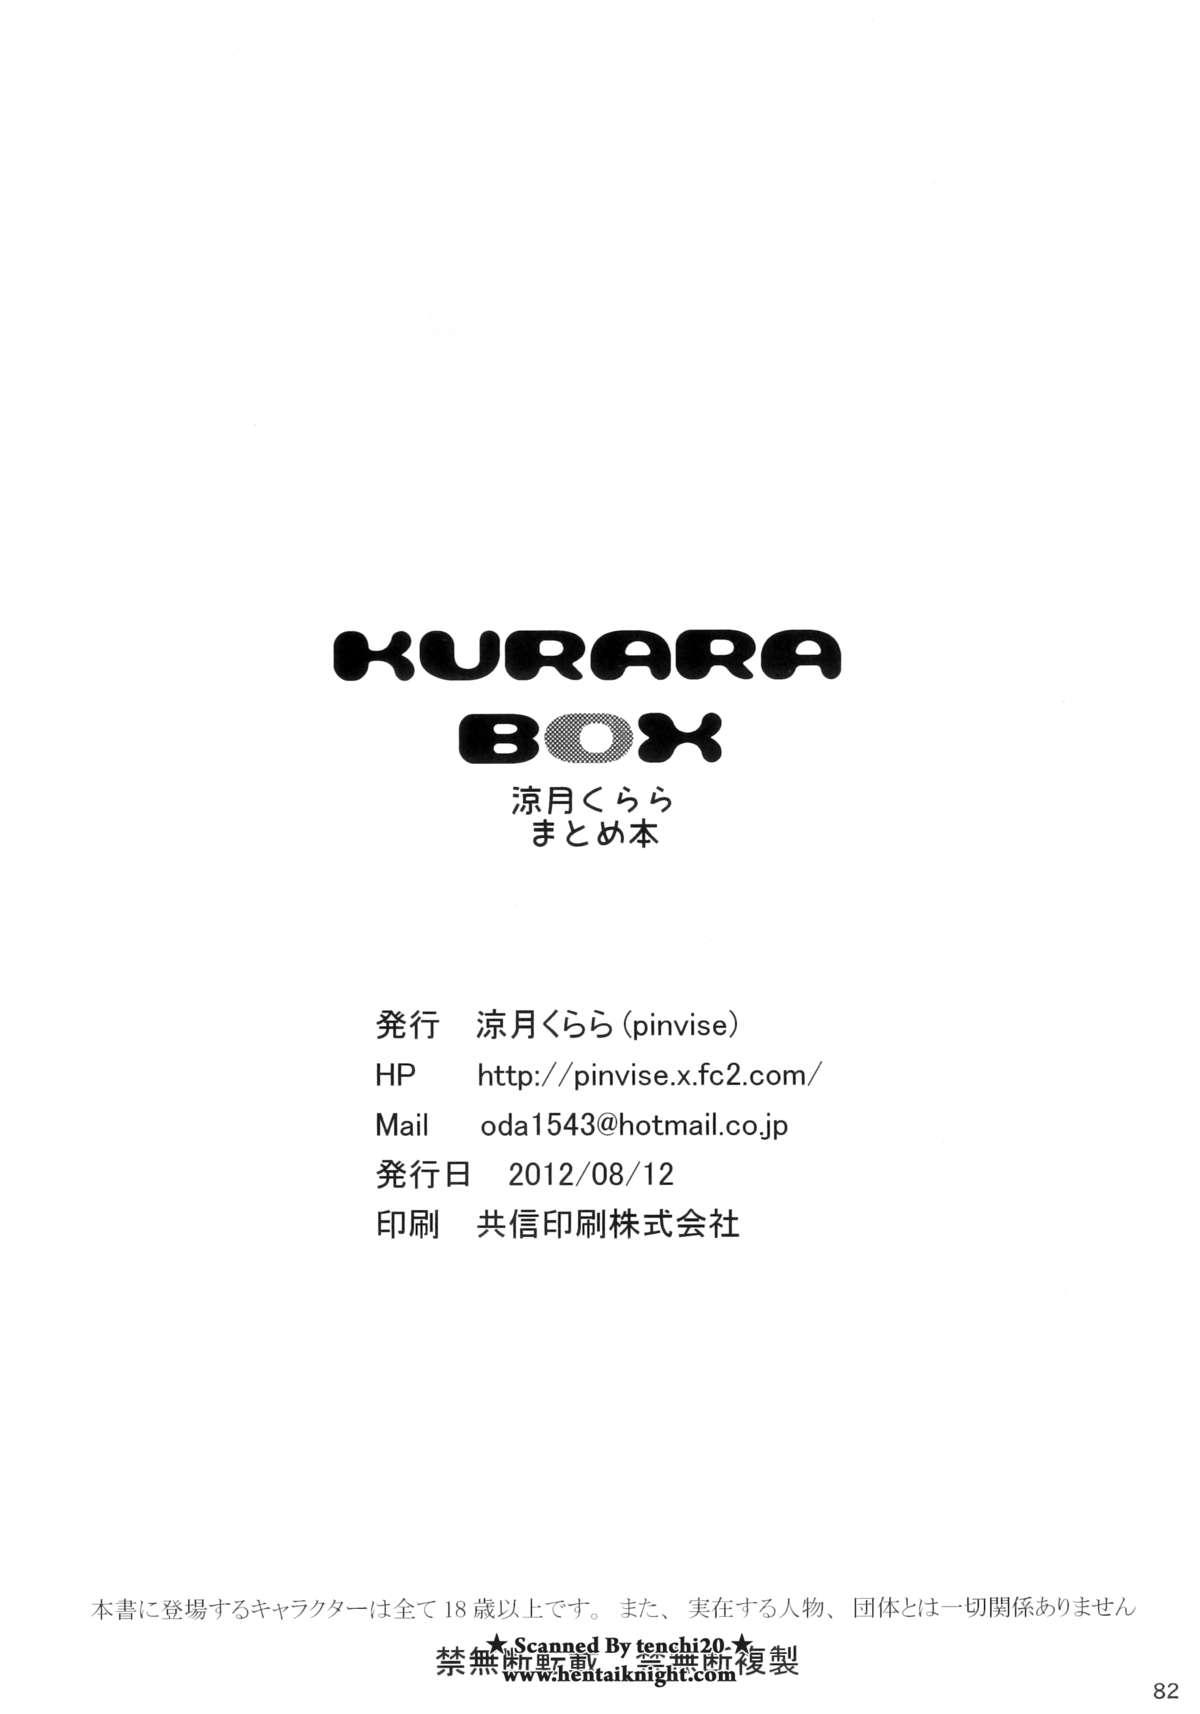 KURARA BOX 81